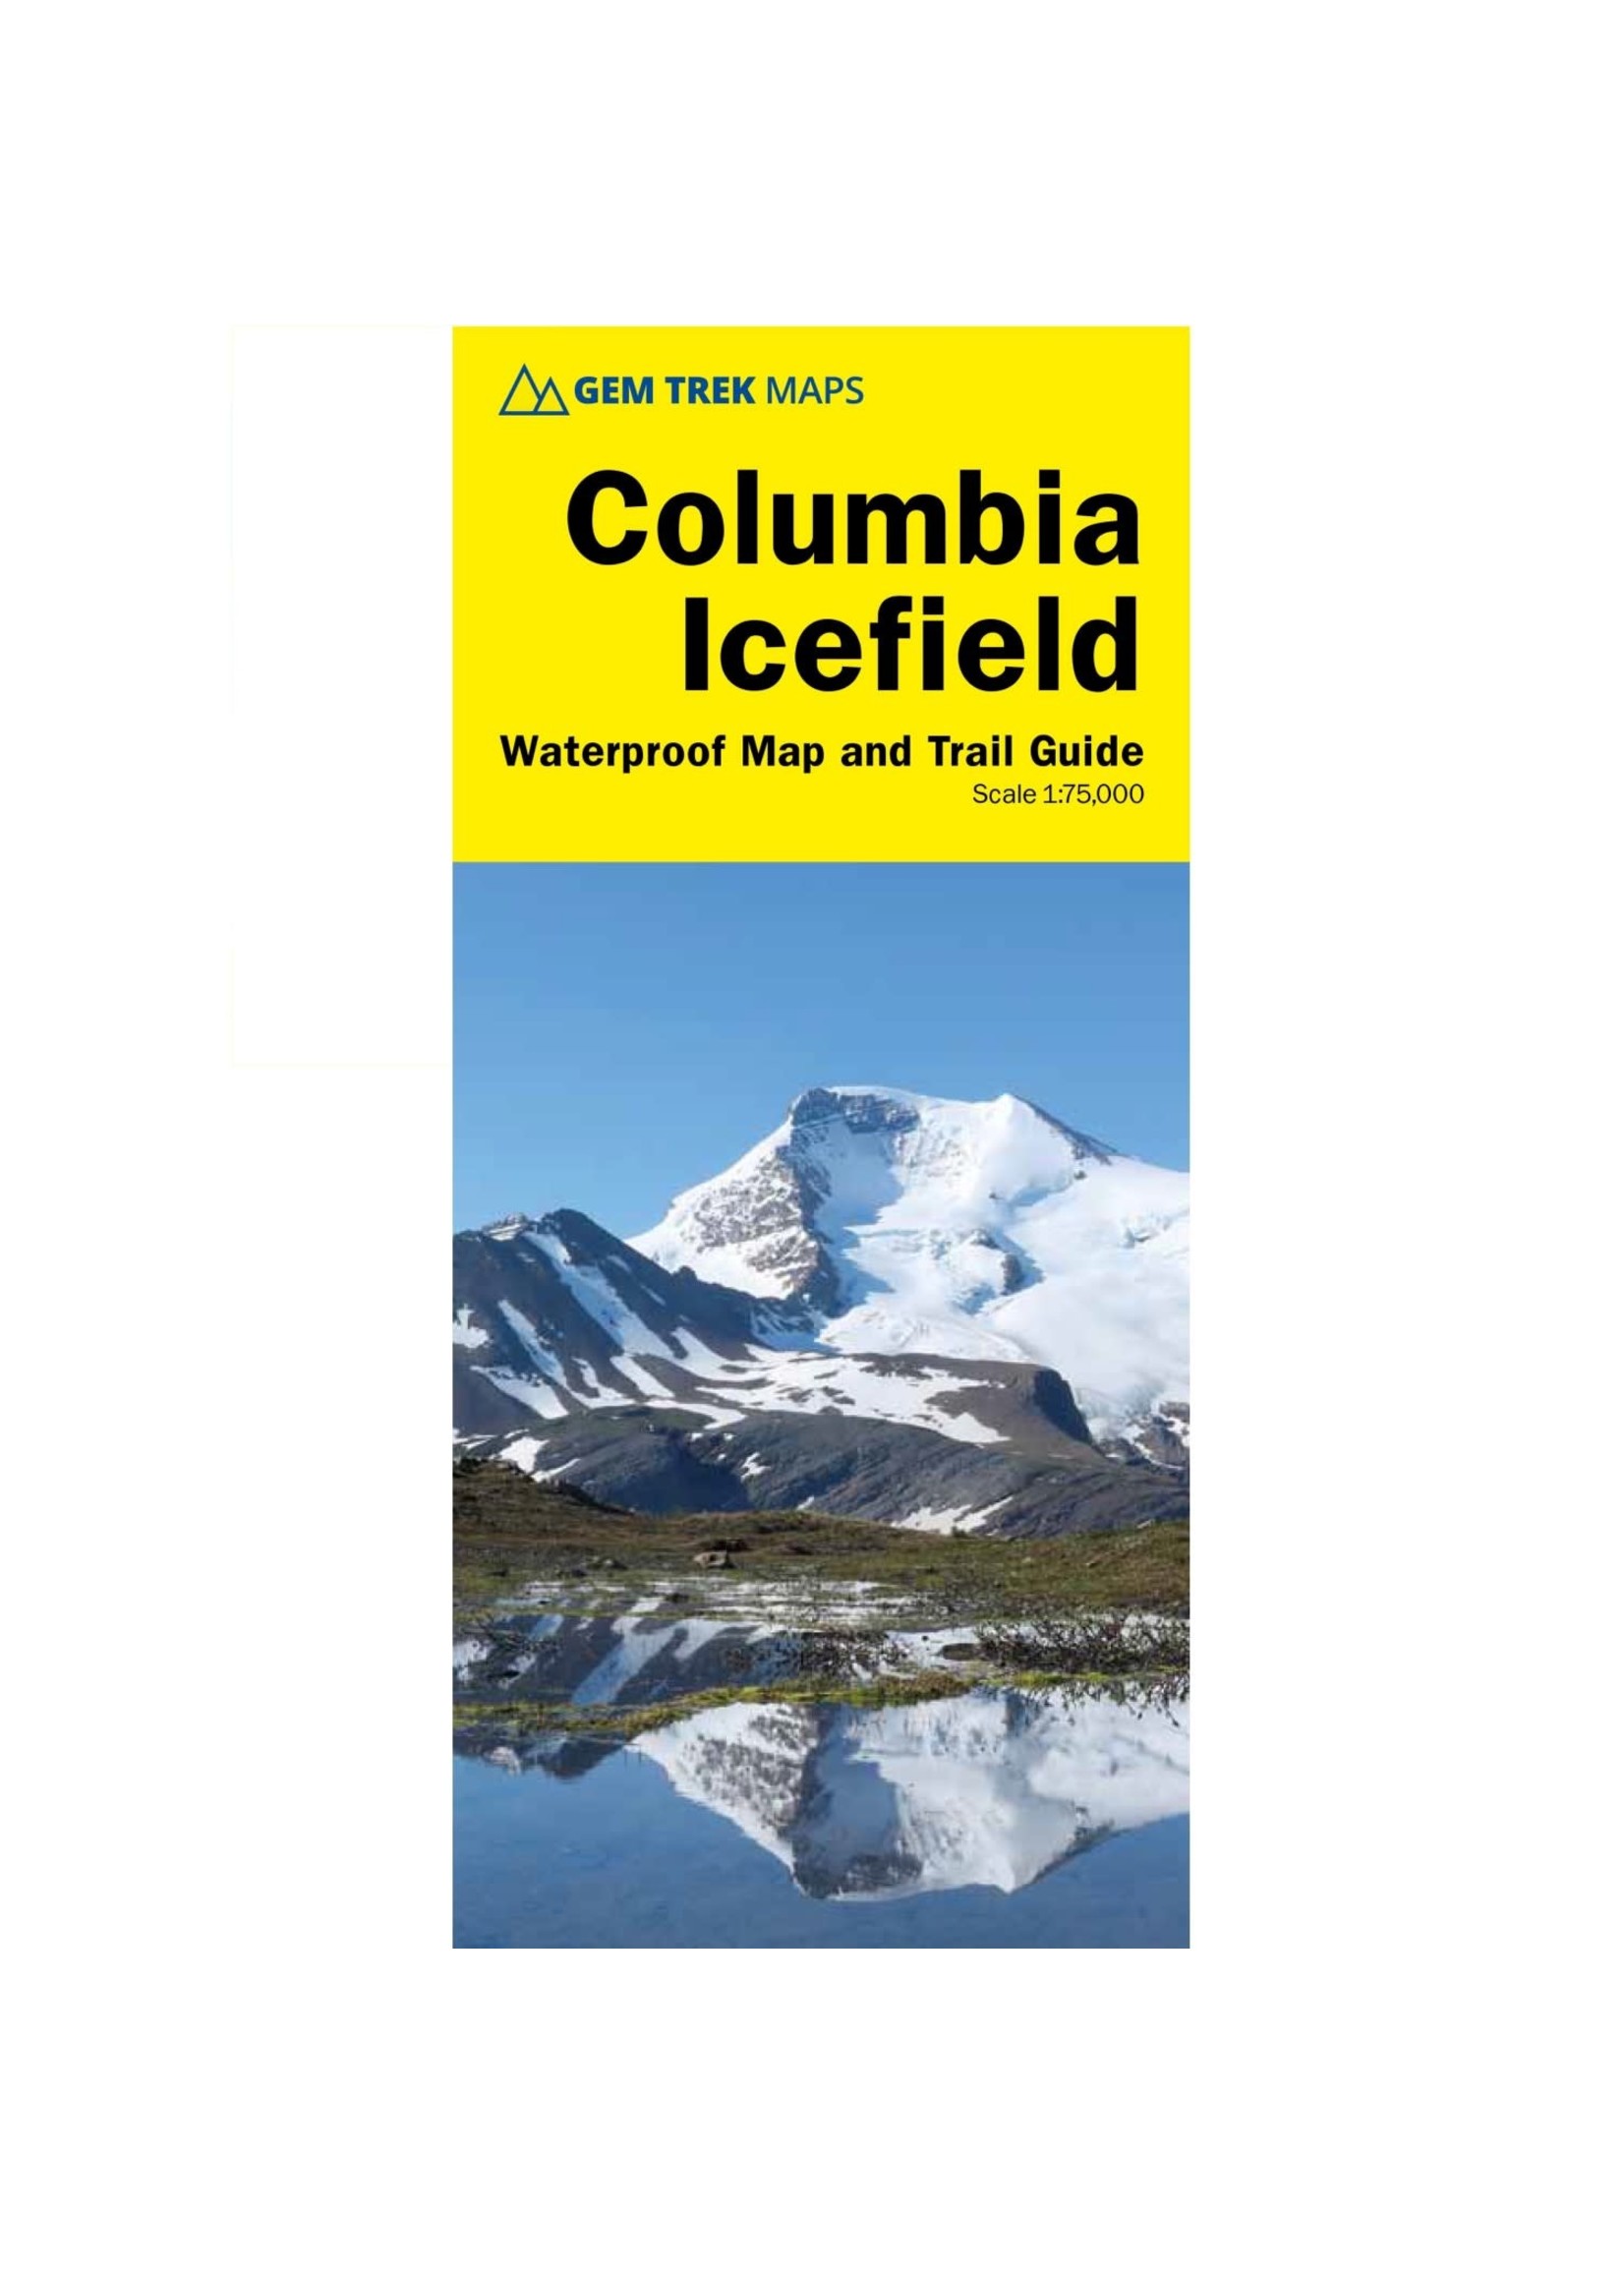 Gemtrek map Columbia Icefield